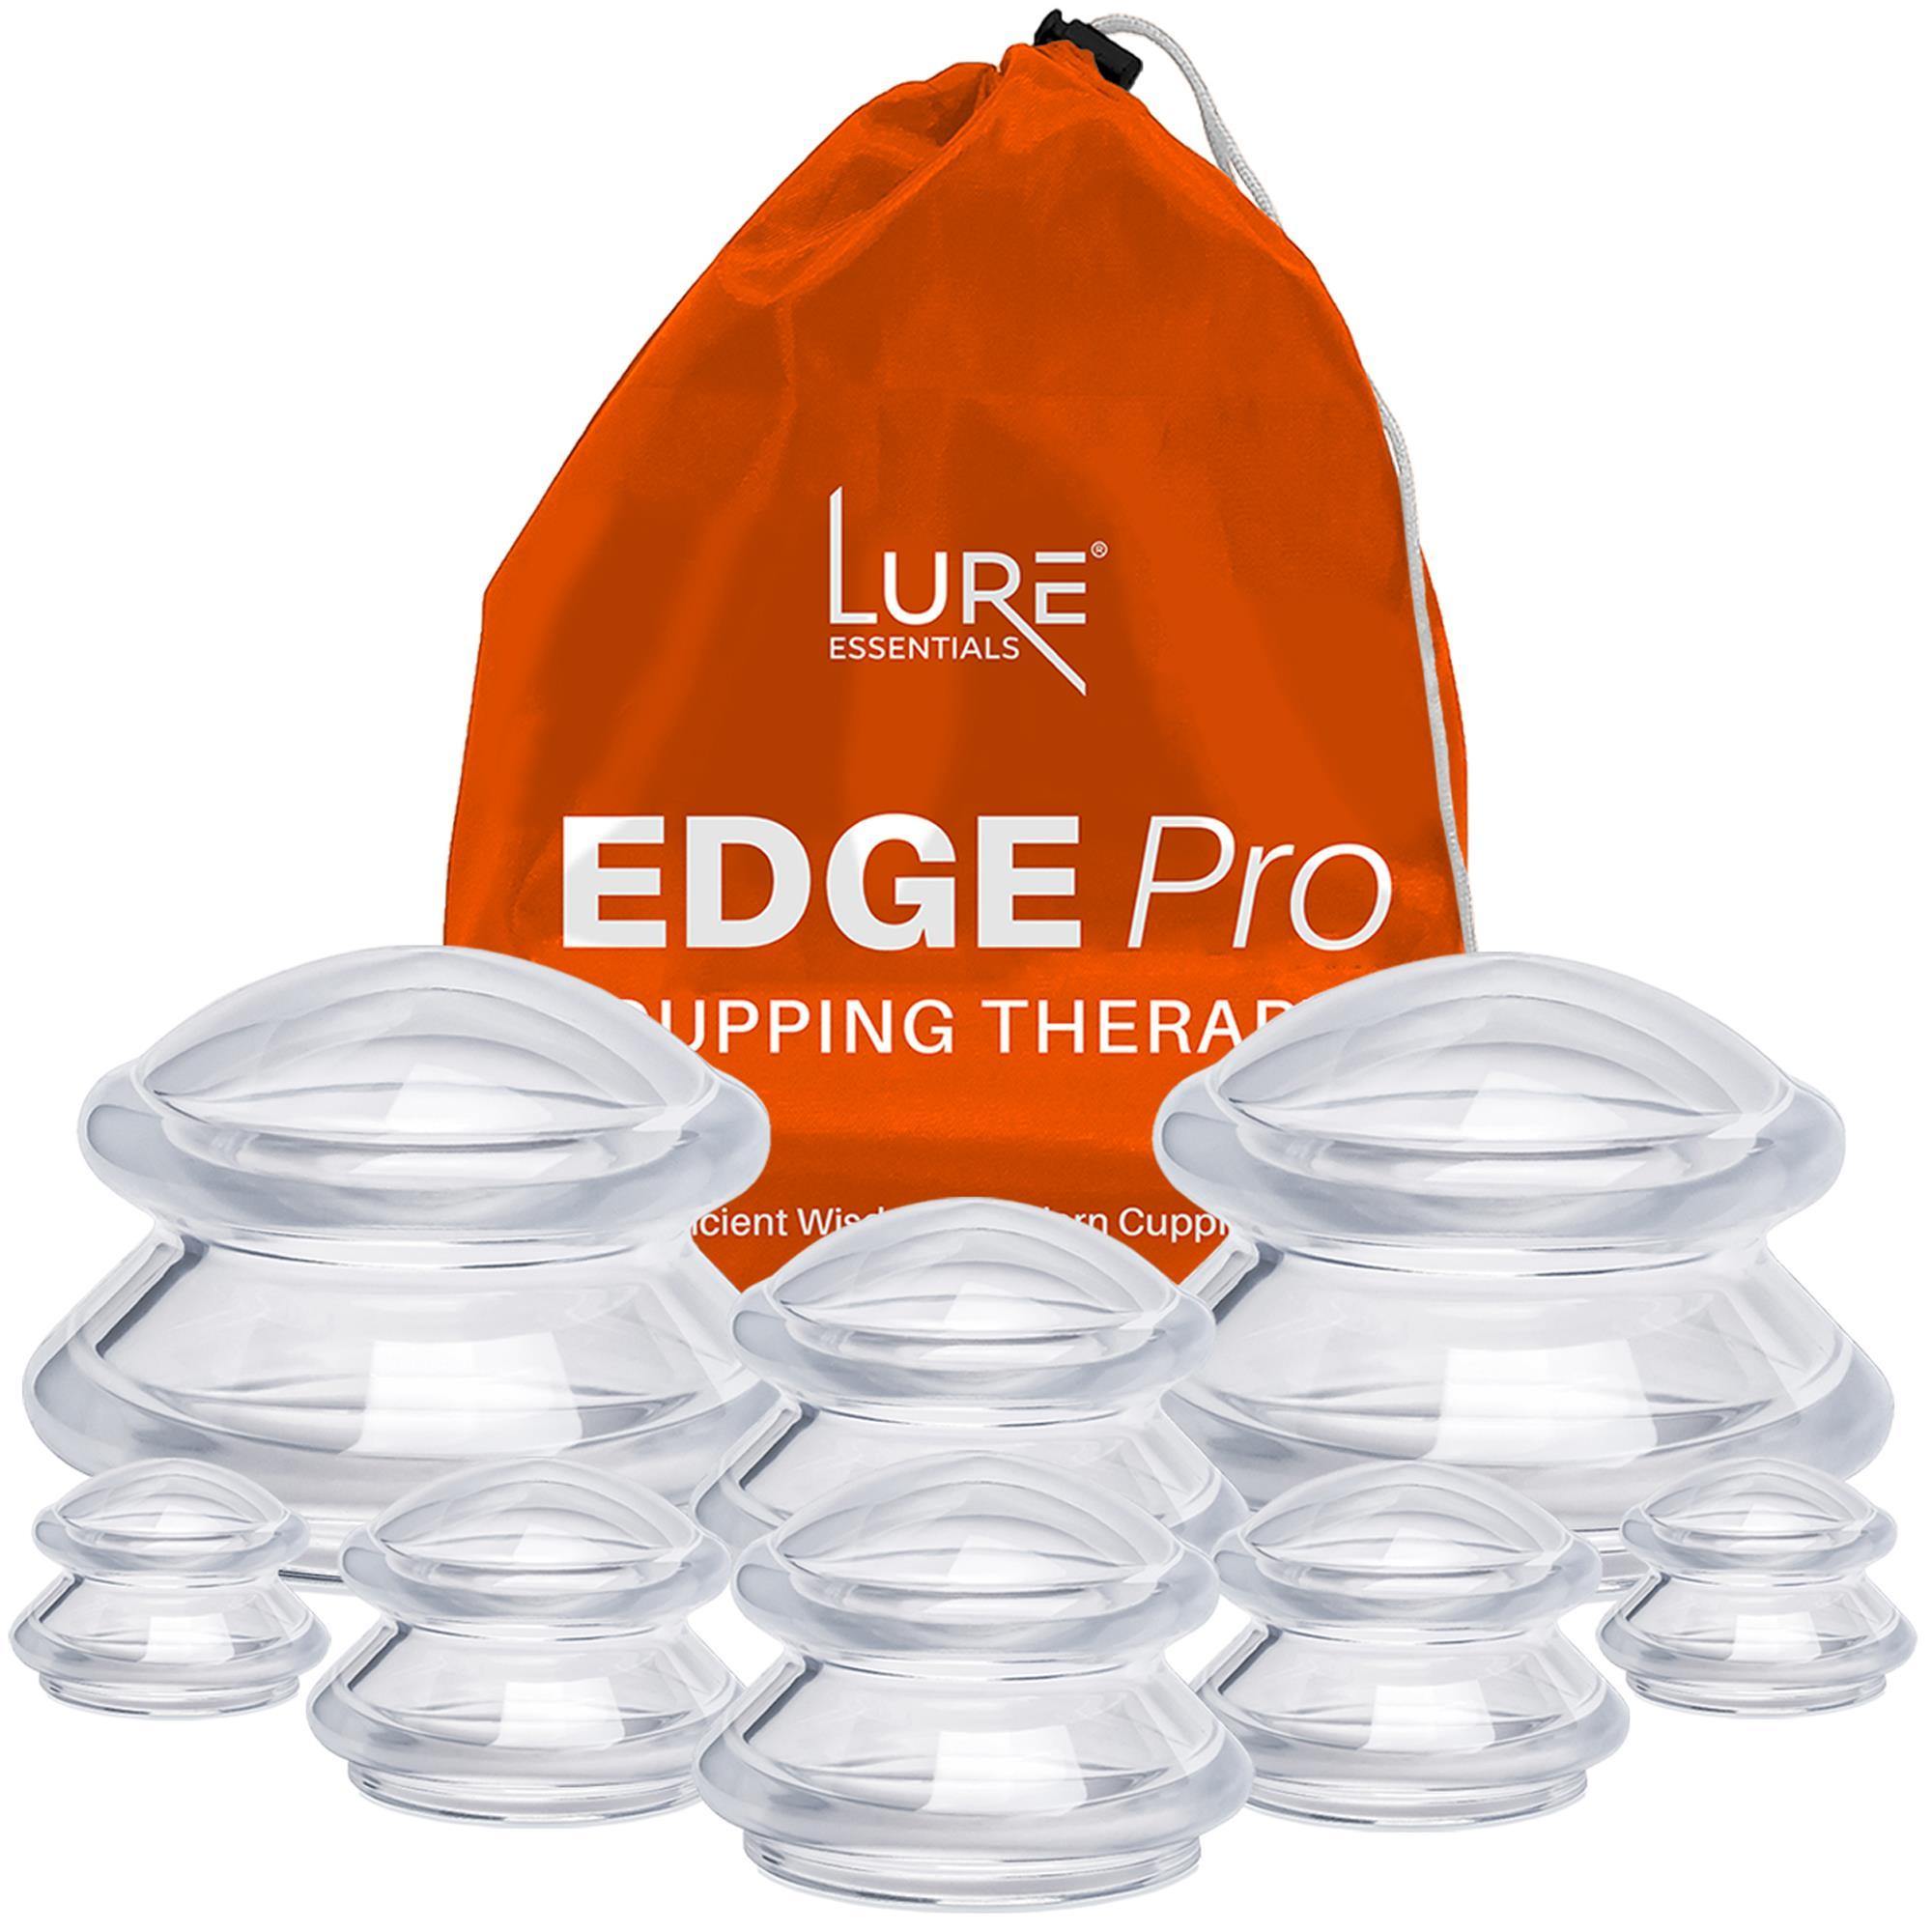 Edge Pro Essential Set